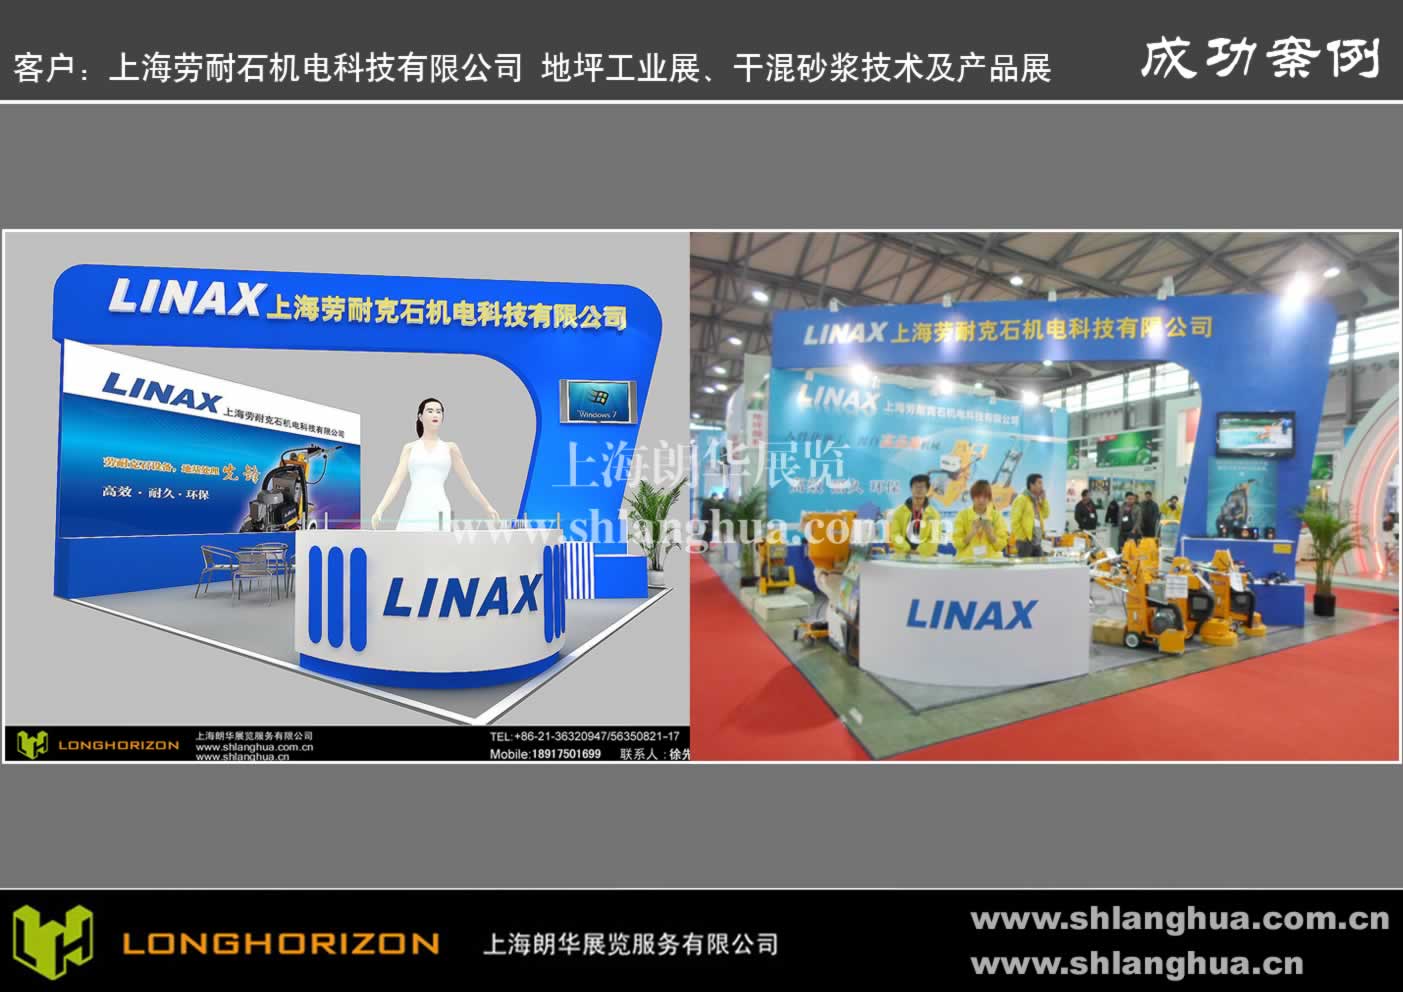 客户：上海劳耐石机电科技有限公司 地坪工业展、干混砂浆技术及产品展